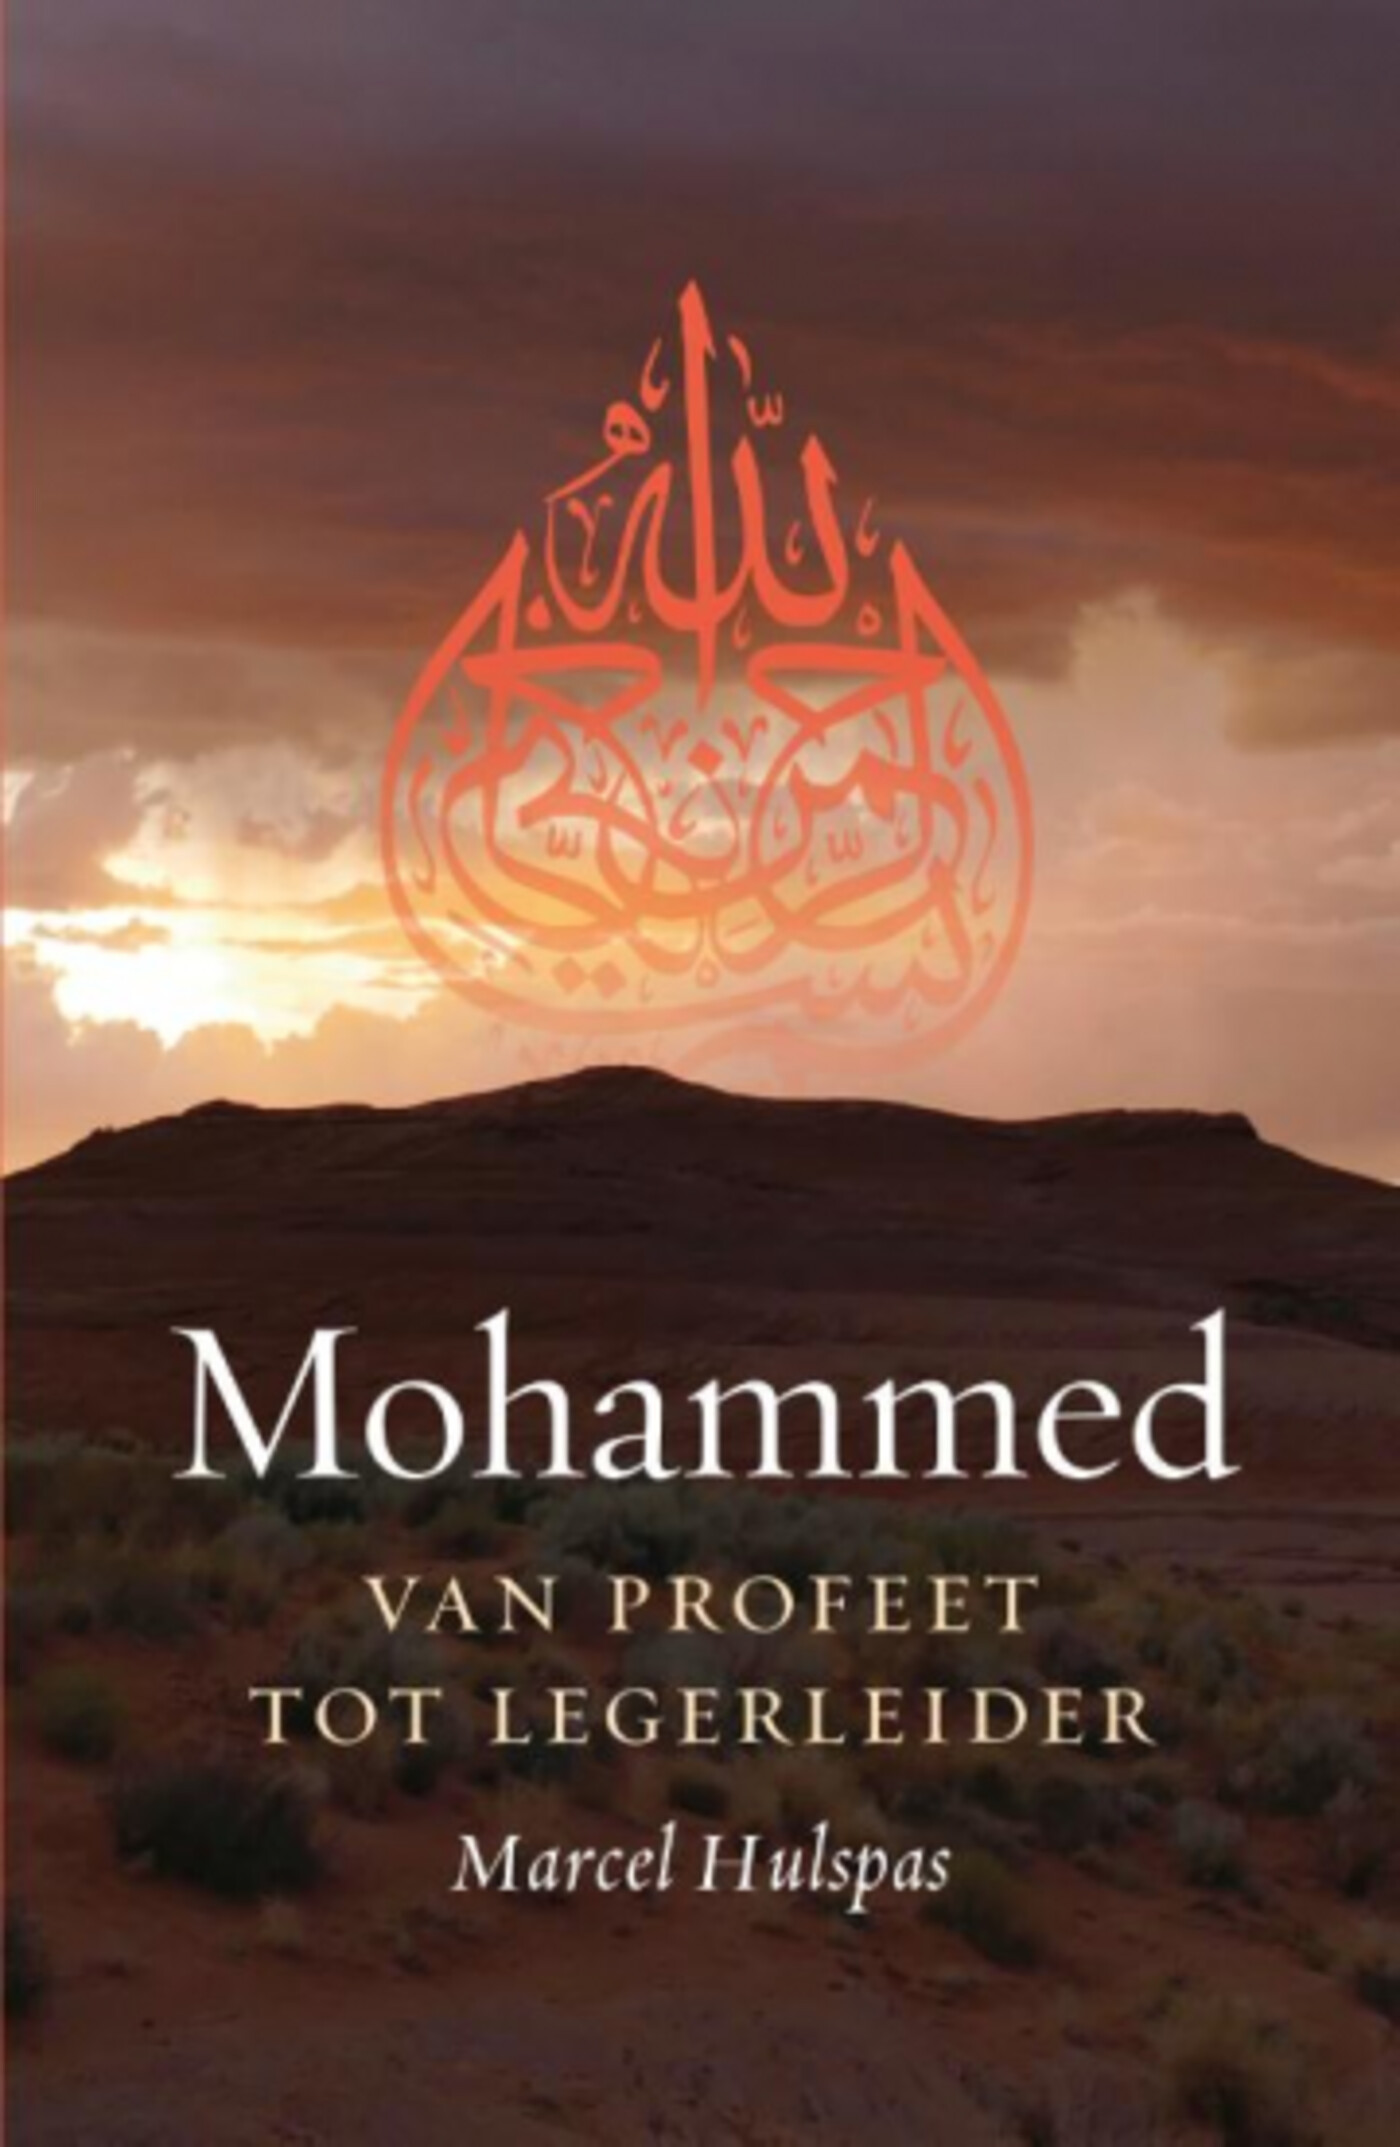 #558 - Marcel Hulspas over 'Mohammed: van profeet tot legerleider'